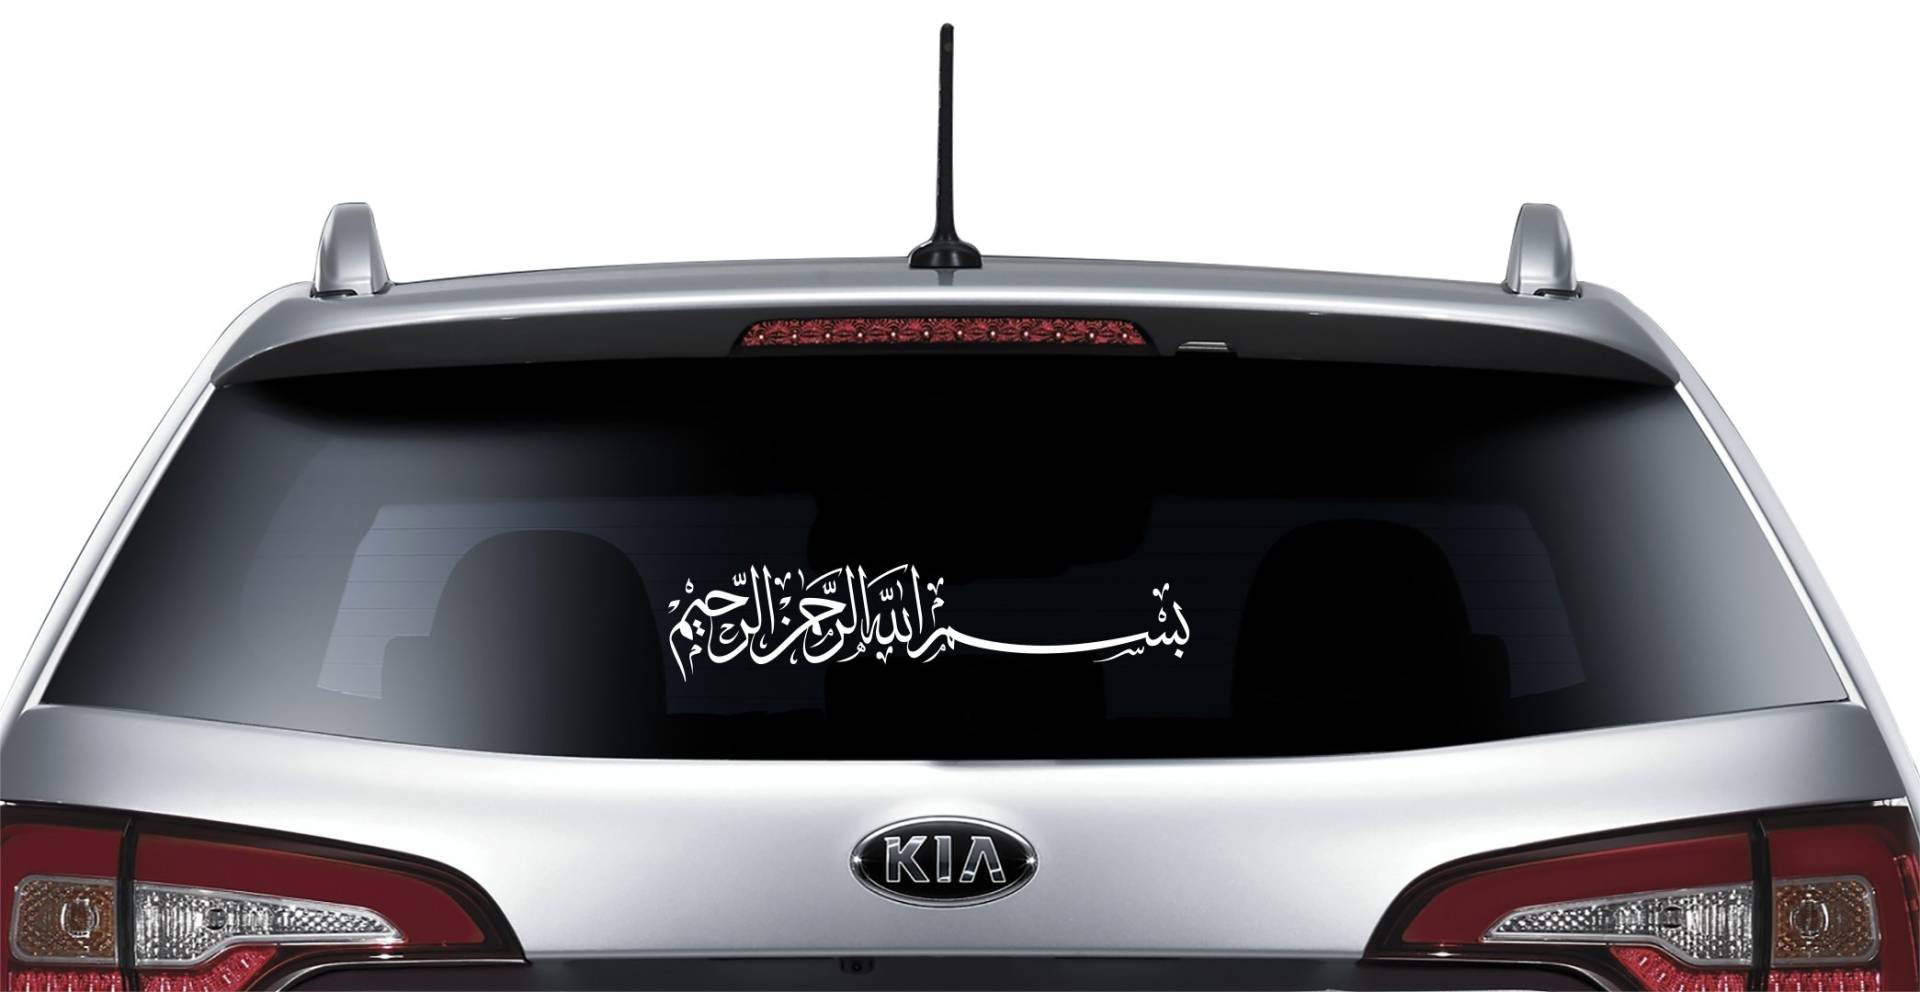 Halal-Wear Bismillah Basmala - Heckscheibenaufkleber, 25cm, Autotattoo Selbstklebend, Arabische Schrift, Islamischer Autoaufkleber! (Bismillah-1) von Halal-Wear